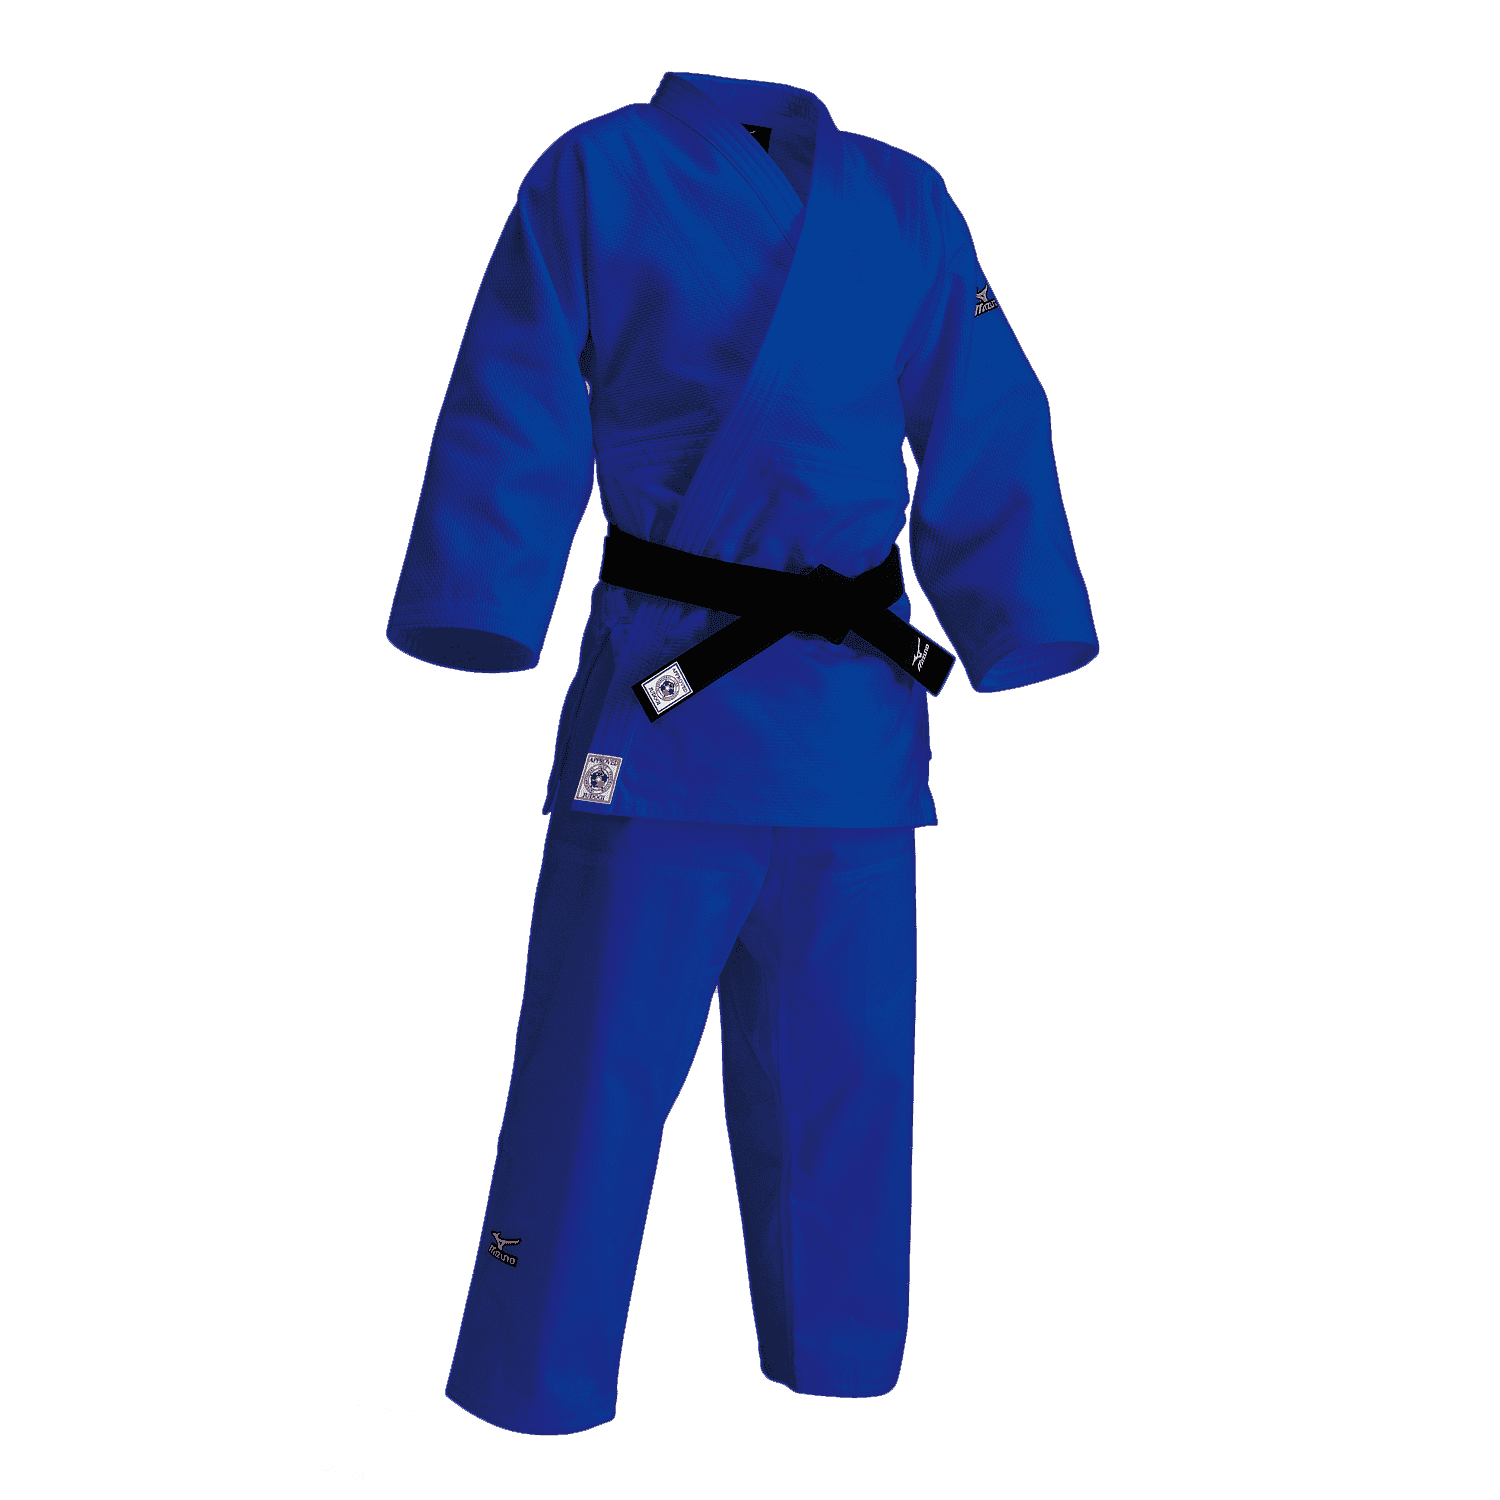 Judogi  Transparent Image